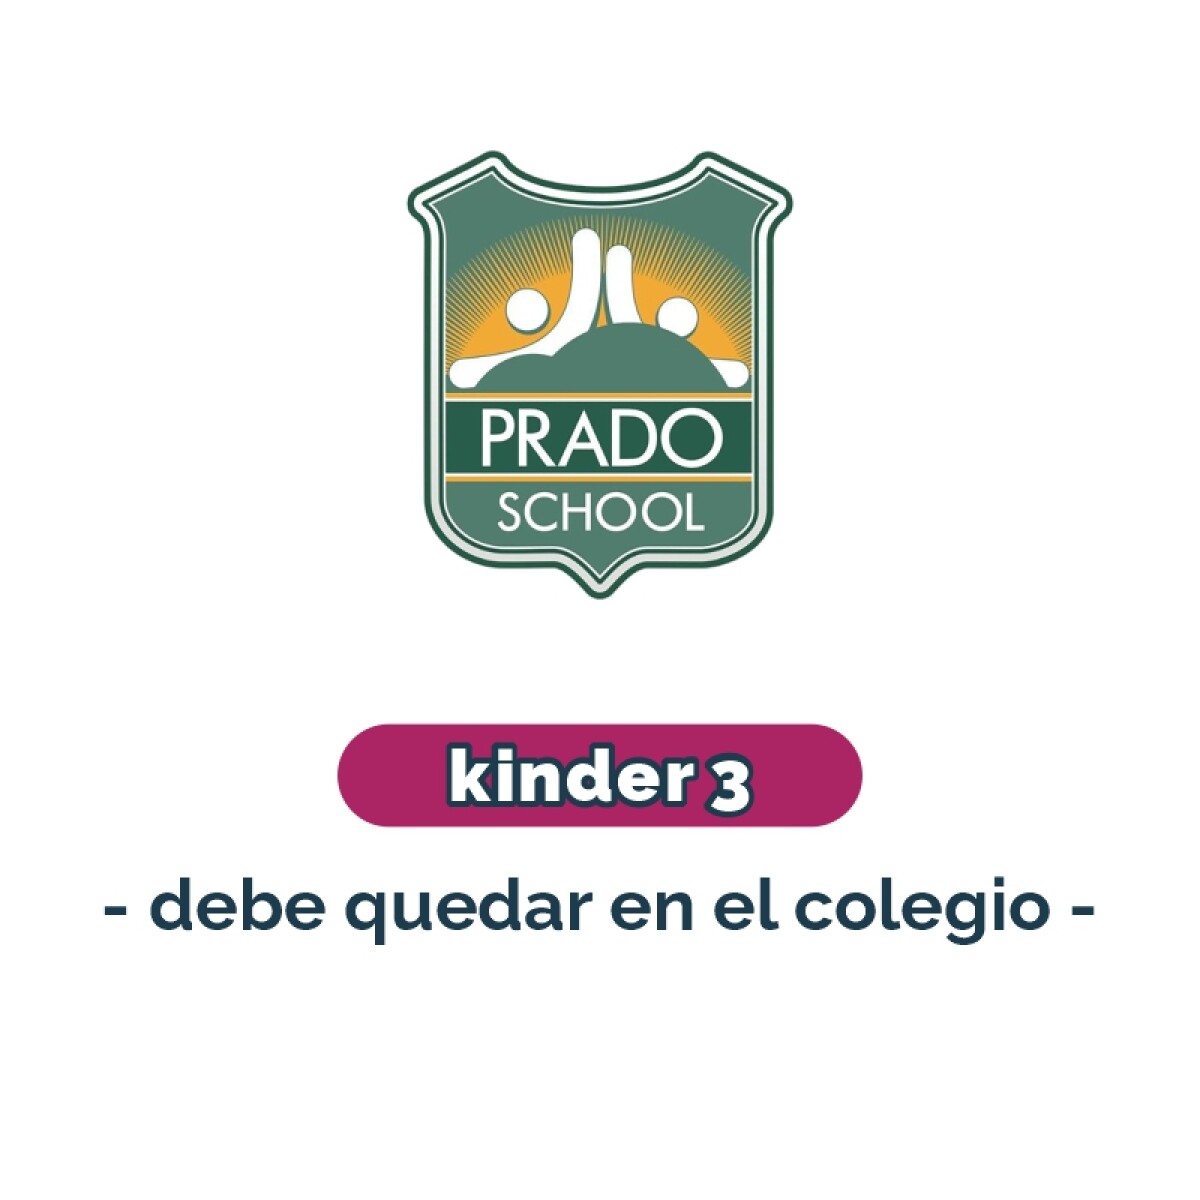 Lista de materiales - Kinder 3 debe quedar en el colegio Prado School 